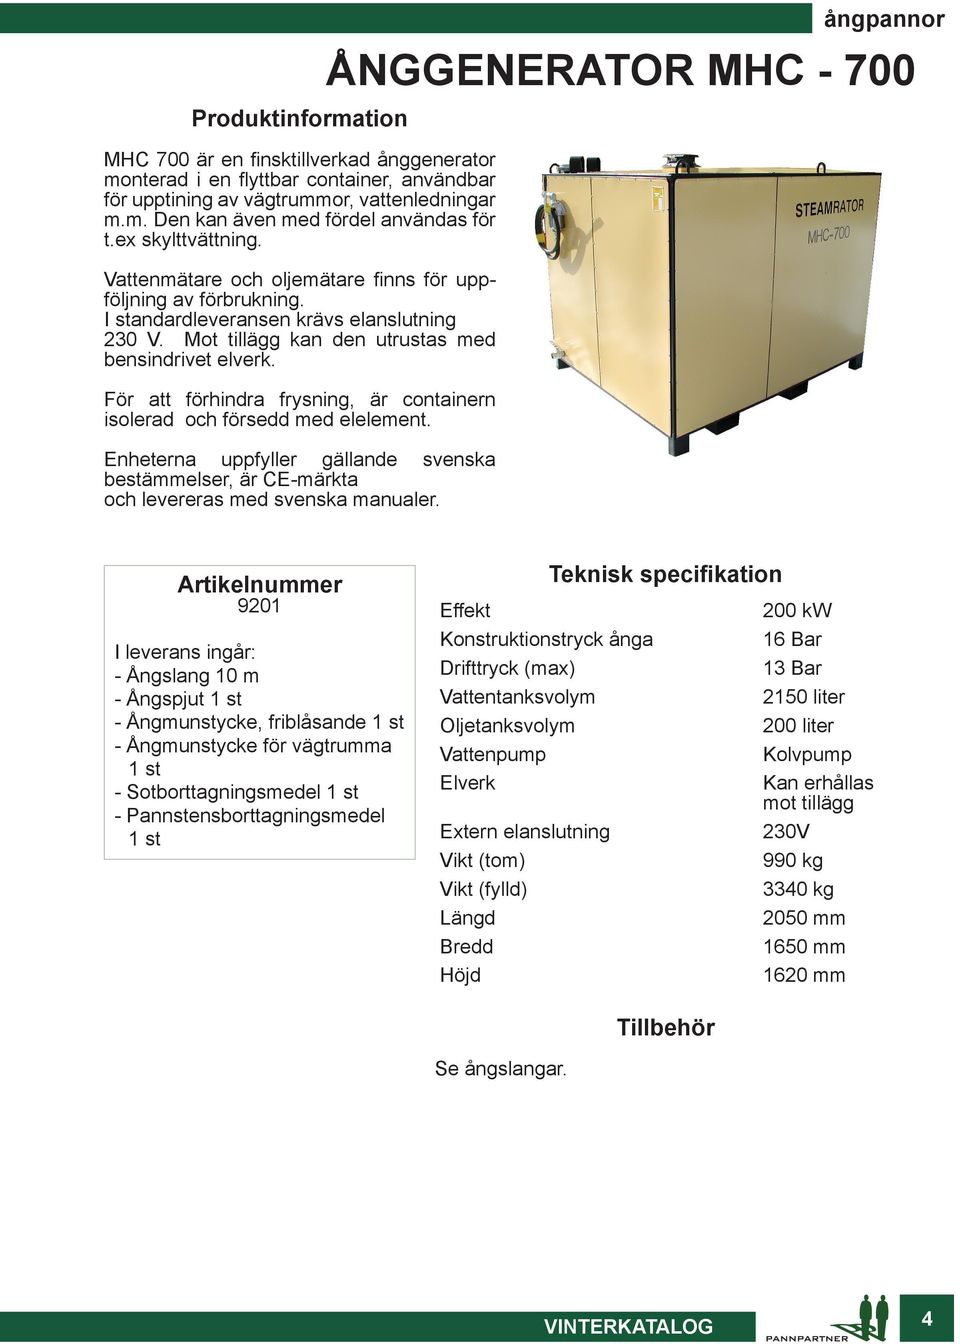 För att förhindra frysning, är containern isolerad och försedd med elelement. Enheterna uppfyller gällande svenska bestämmelser, är CE-märkta och levereras med svenska manualer.